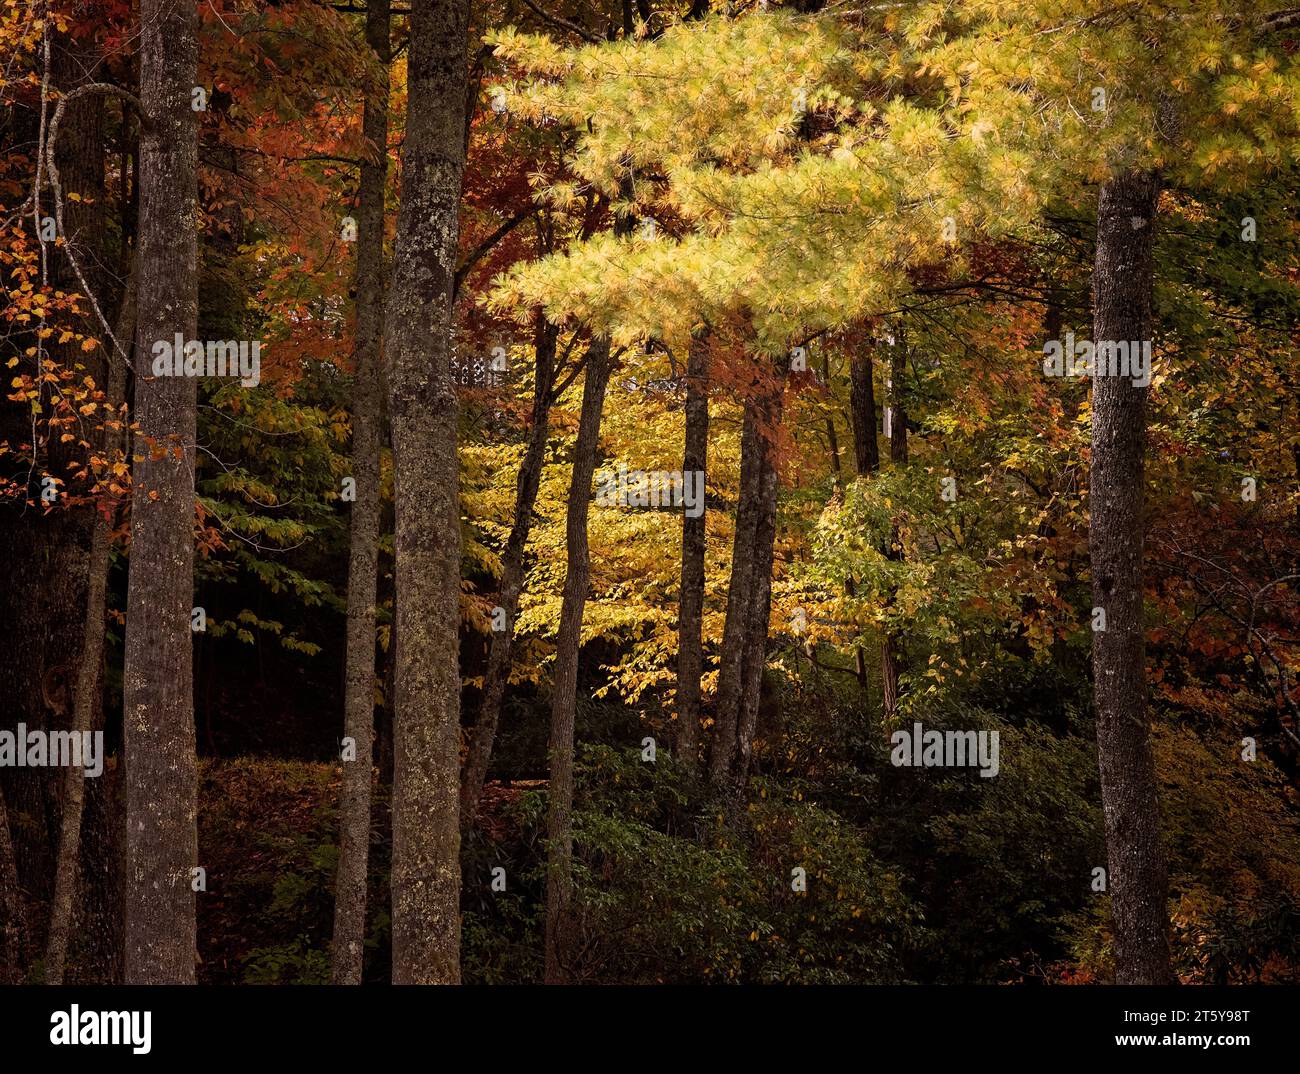 Couleurs dorées dans la forêt, l'ouest de la Caroline du Nord en automne, cadre rural des couleurs d'automne Banque D'Images